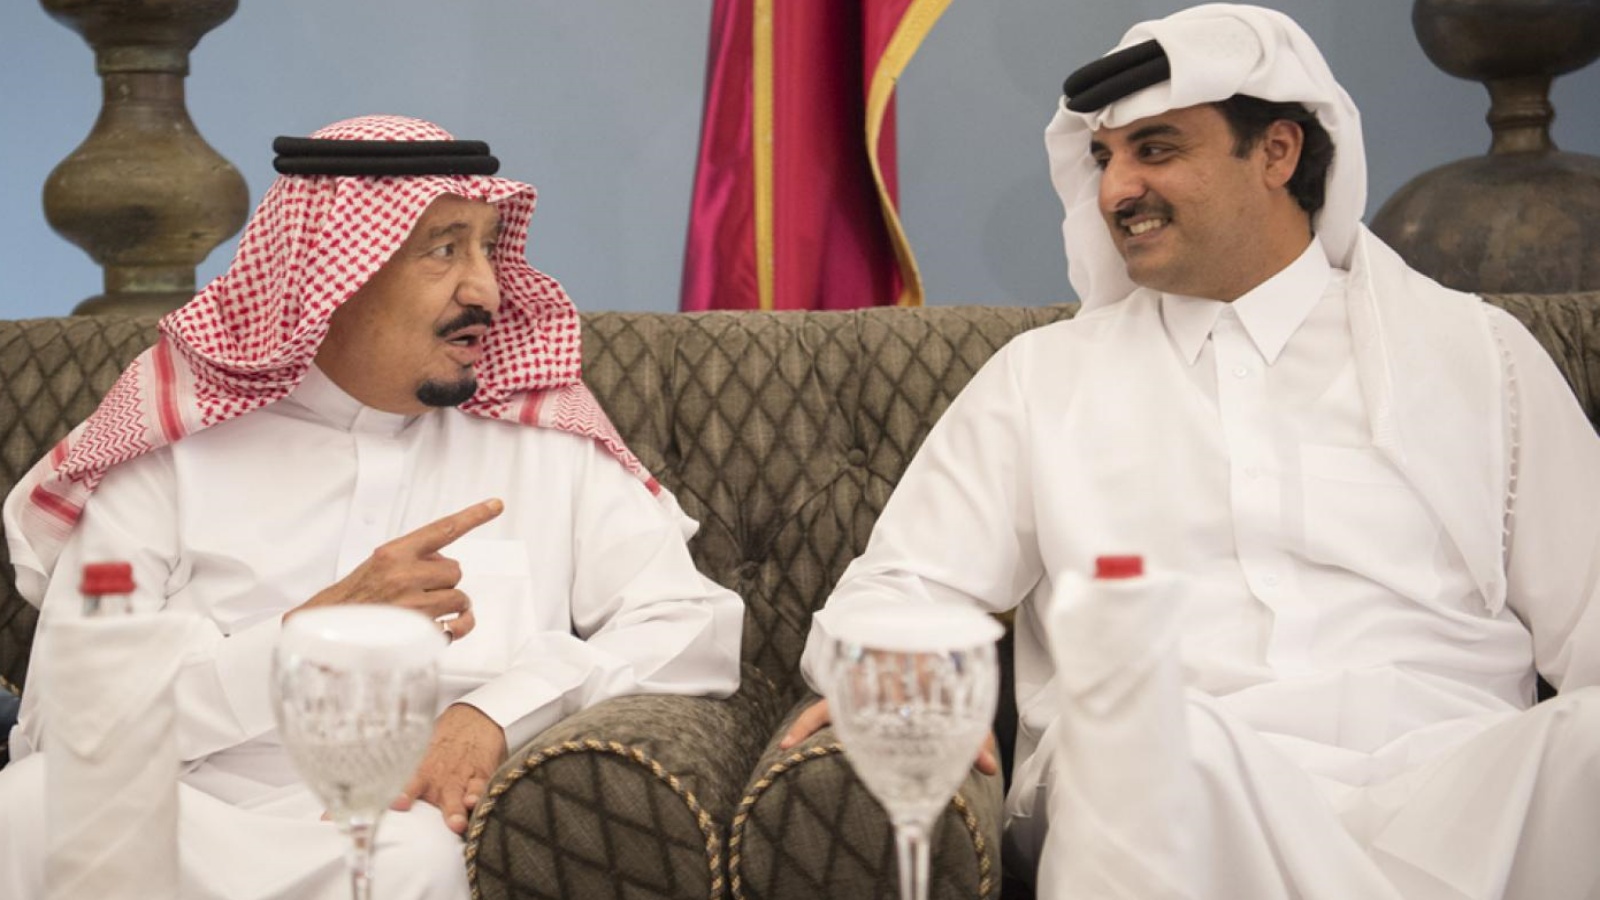 الملك سلمان بن عبد العزيز مع أمير قطر تميم بن حمد في لقاء سابق عام 2016 